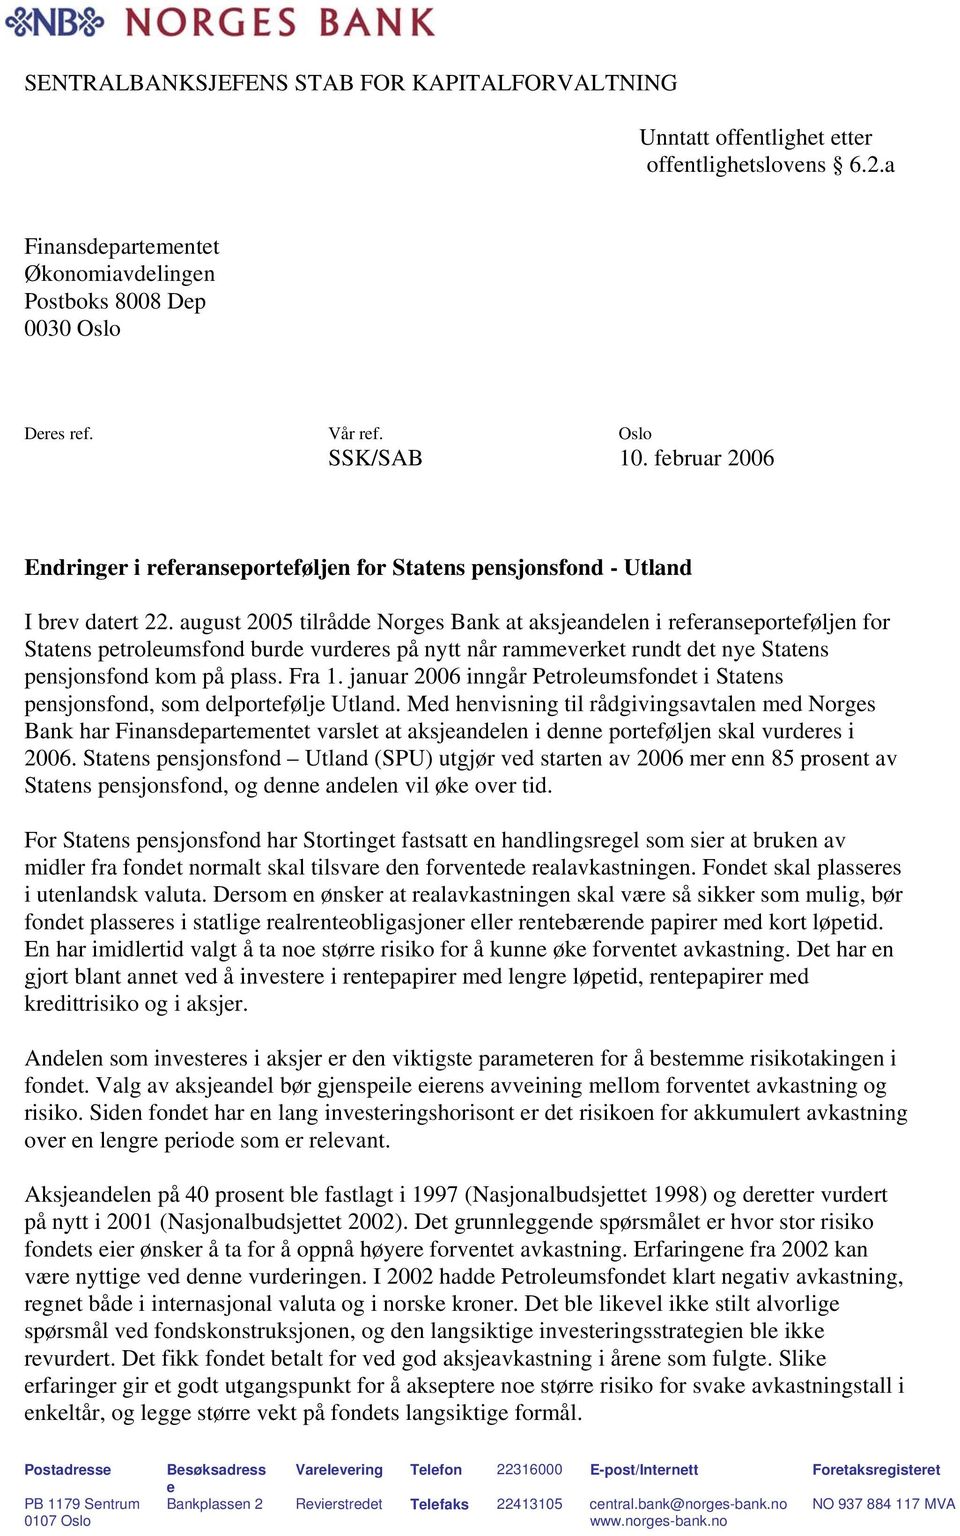 august 2005 tilrådde Norges Bank at aksjeandelen i referanseporteføljen for Statens petroleumsfond burde vurderes på nytt når rammeverket rundt det nye Statens pensjonsfond kom på plass. Fra 1.